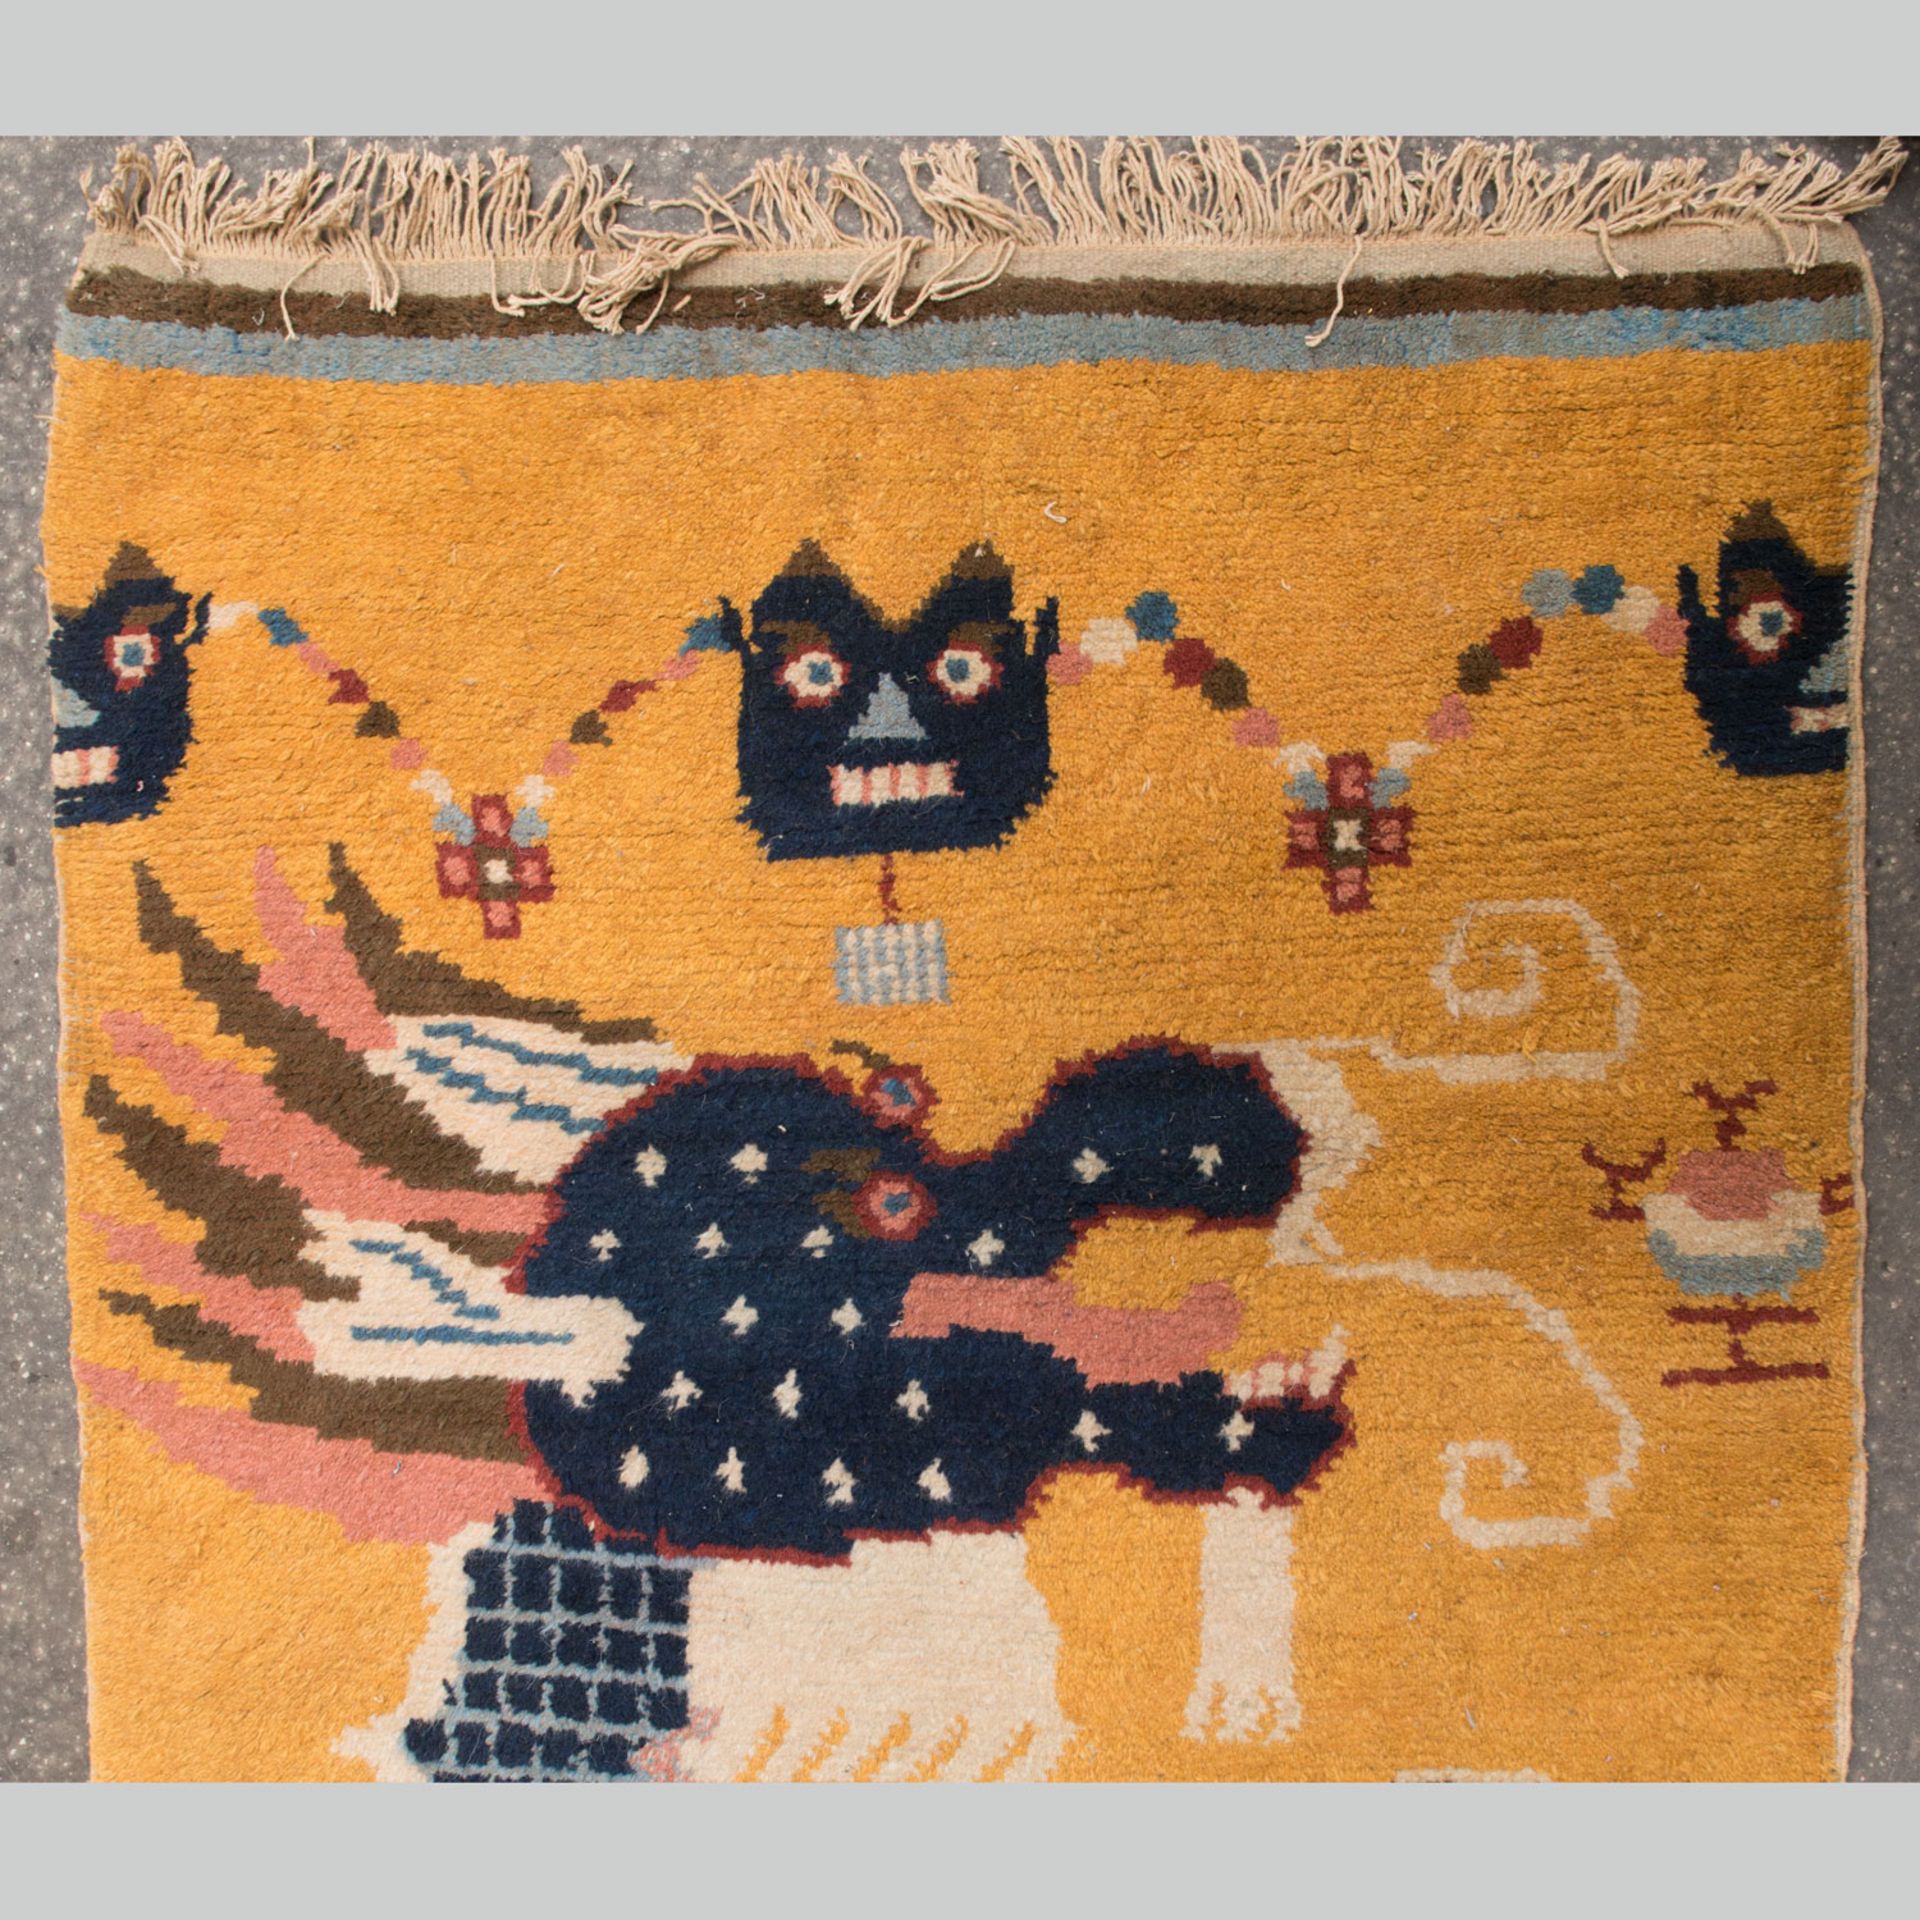 Chinese Dragon Carpet - Image 2 of 3